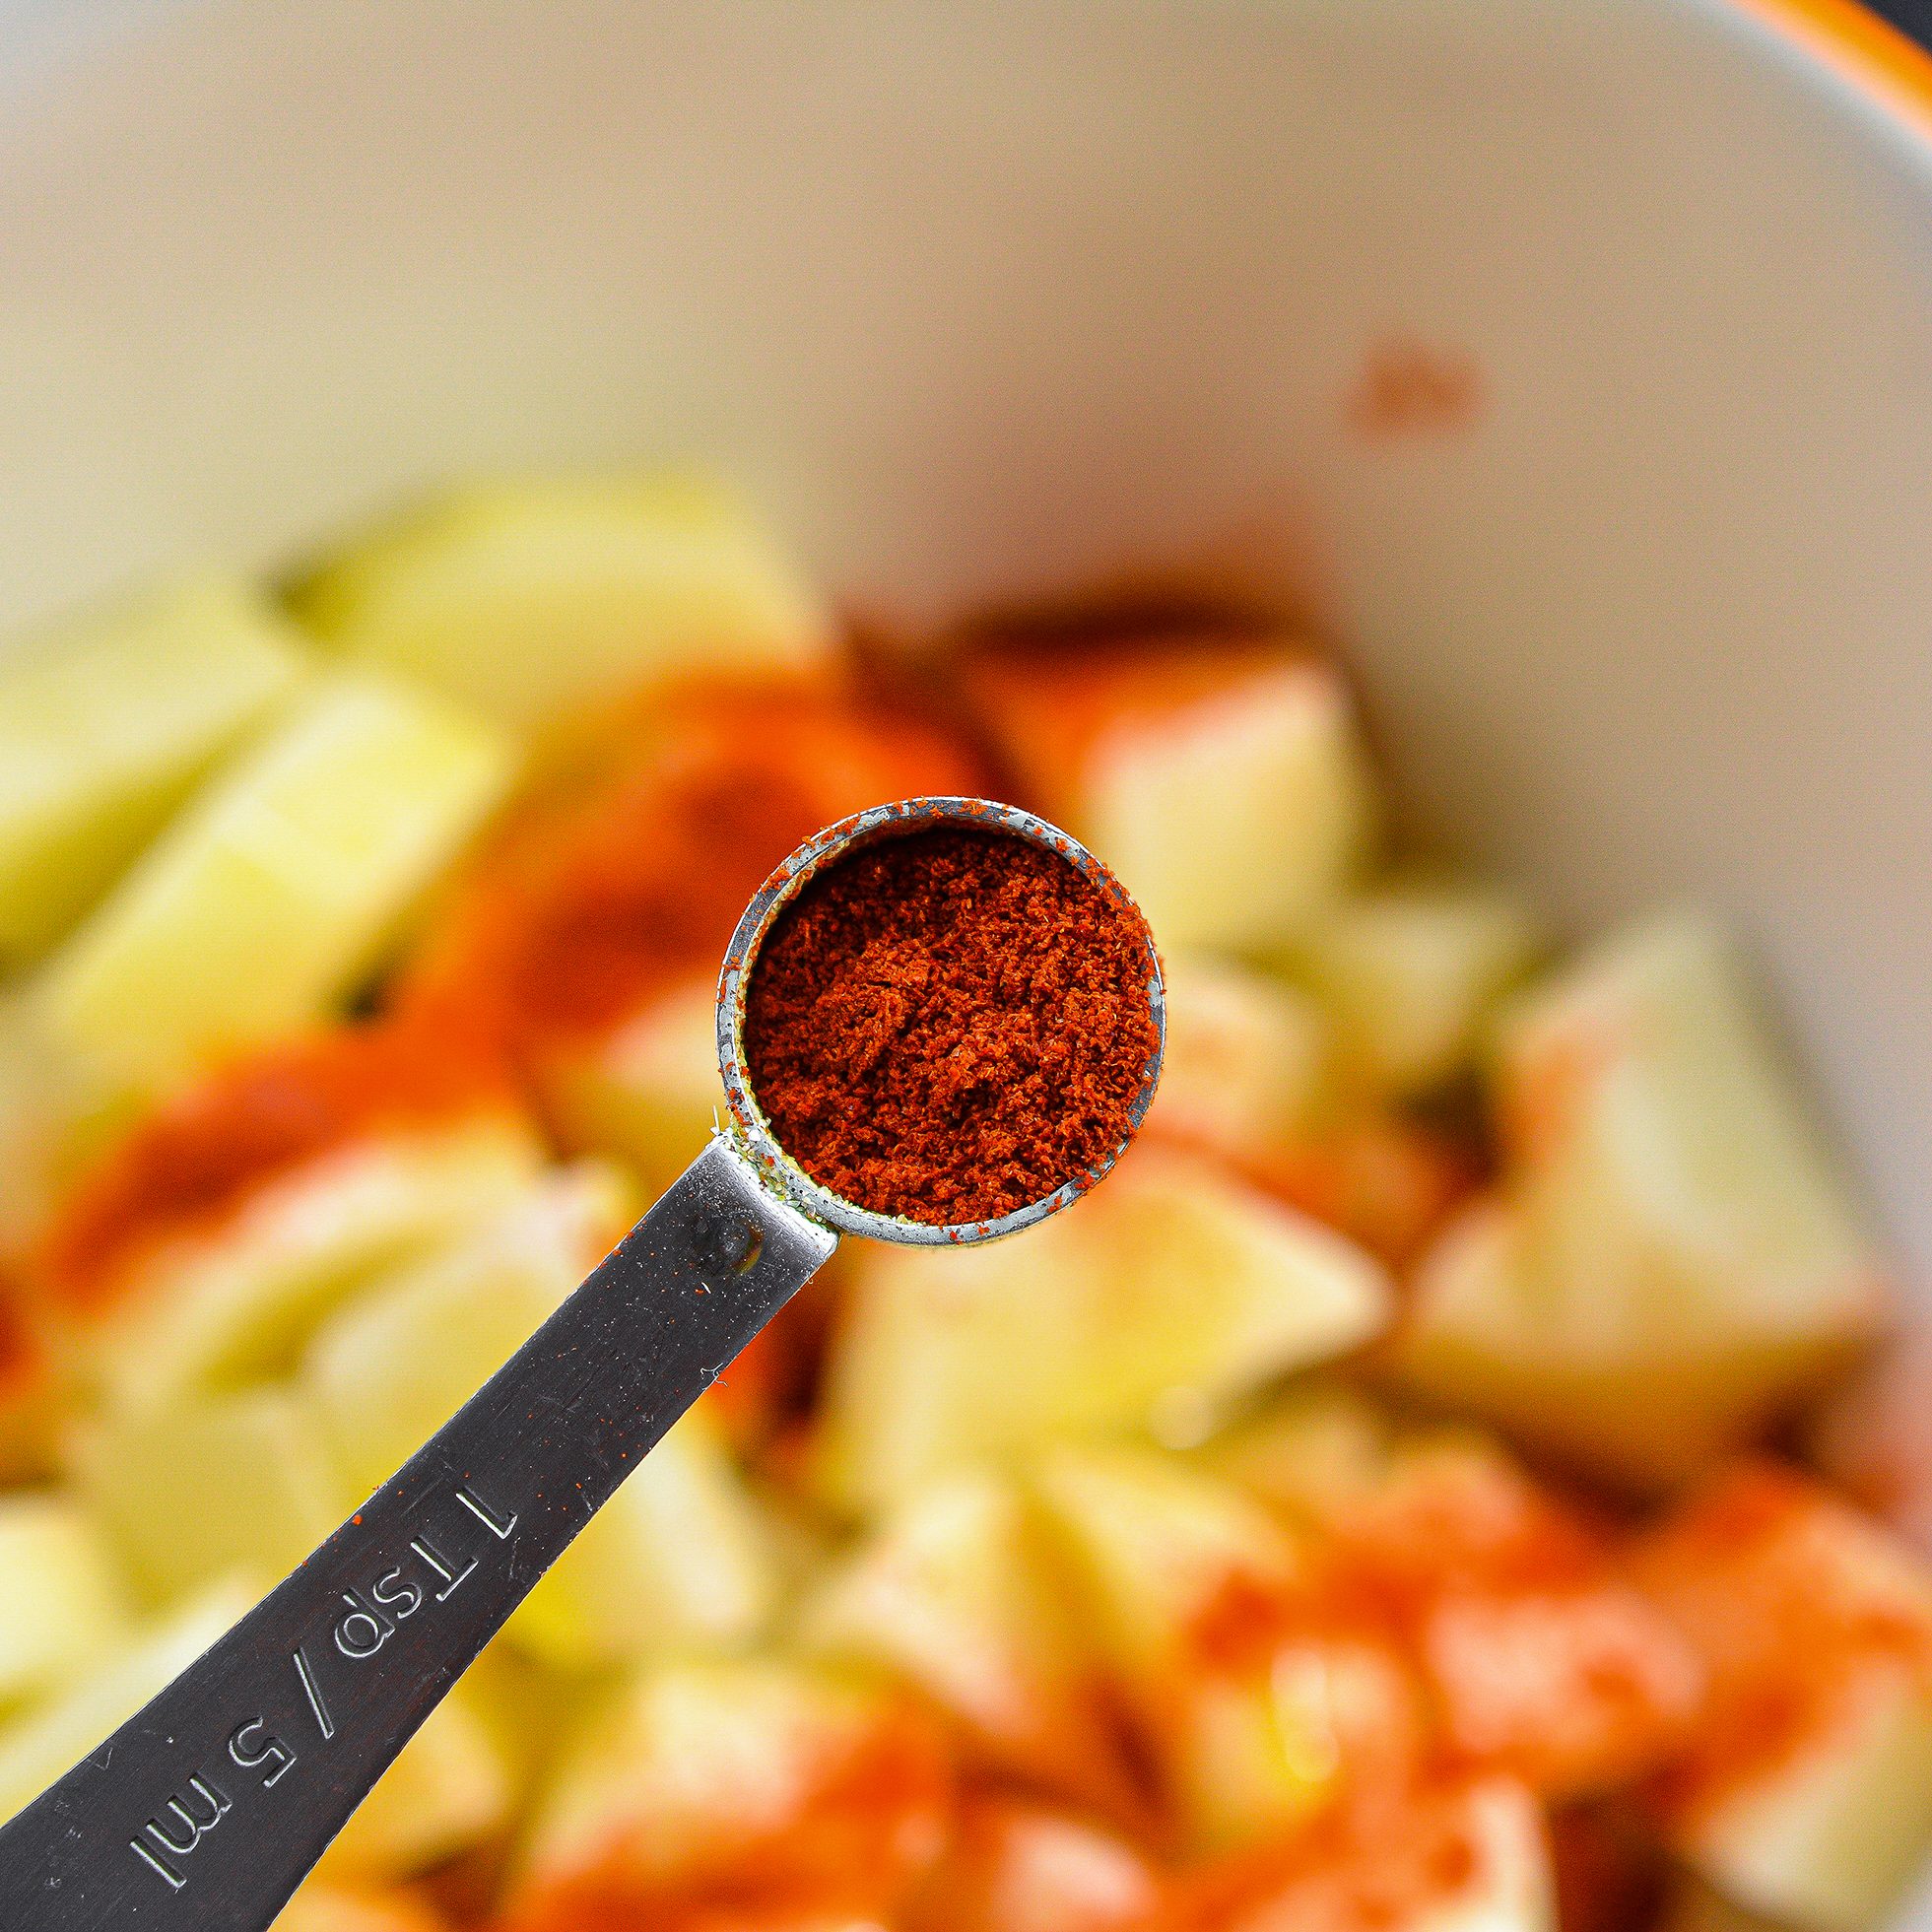 Adding paprika